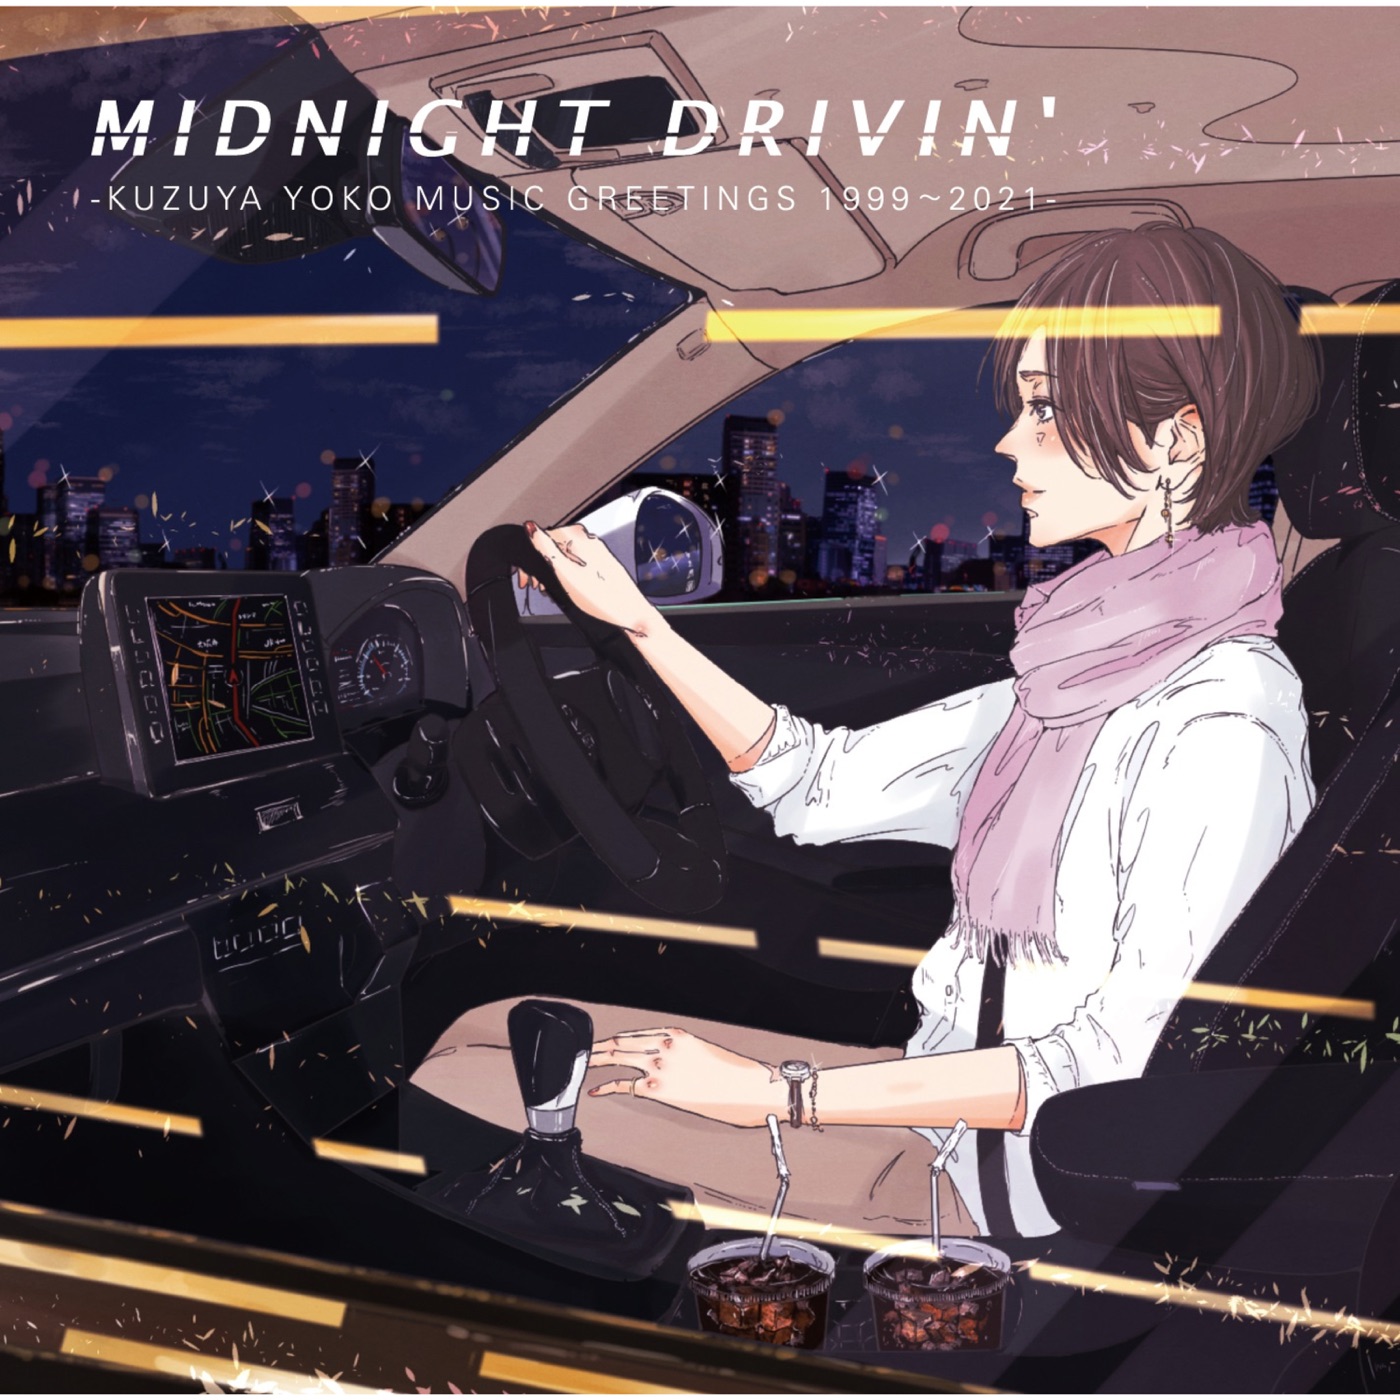 MIDNIGHT DRIVIN' -KUZUYA YOKO MUSIC GREETINGS 1999-2021- by Yoko Kuzuya